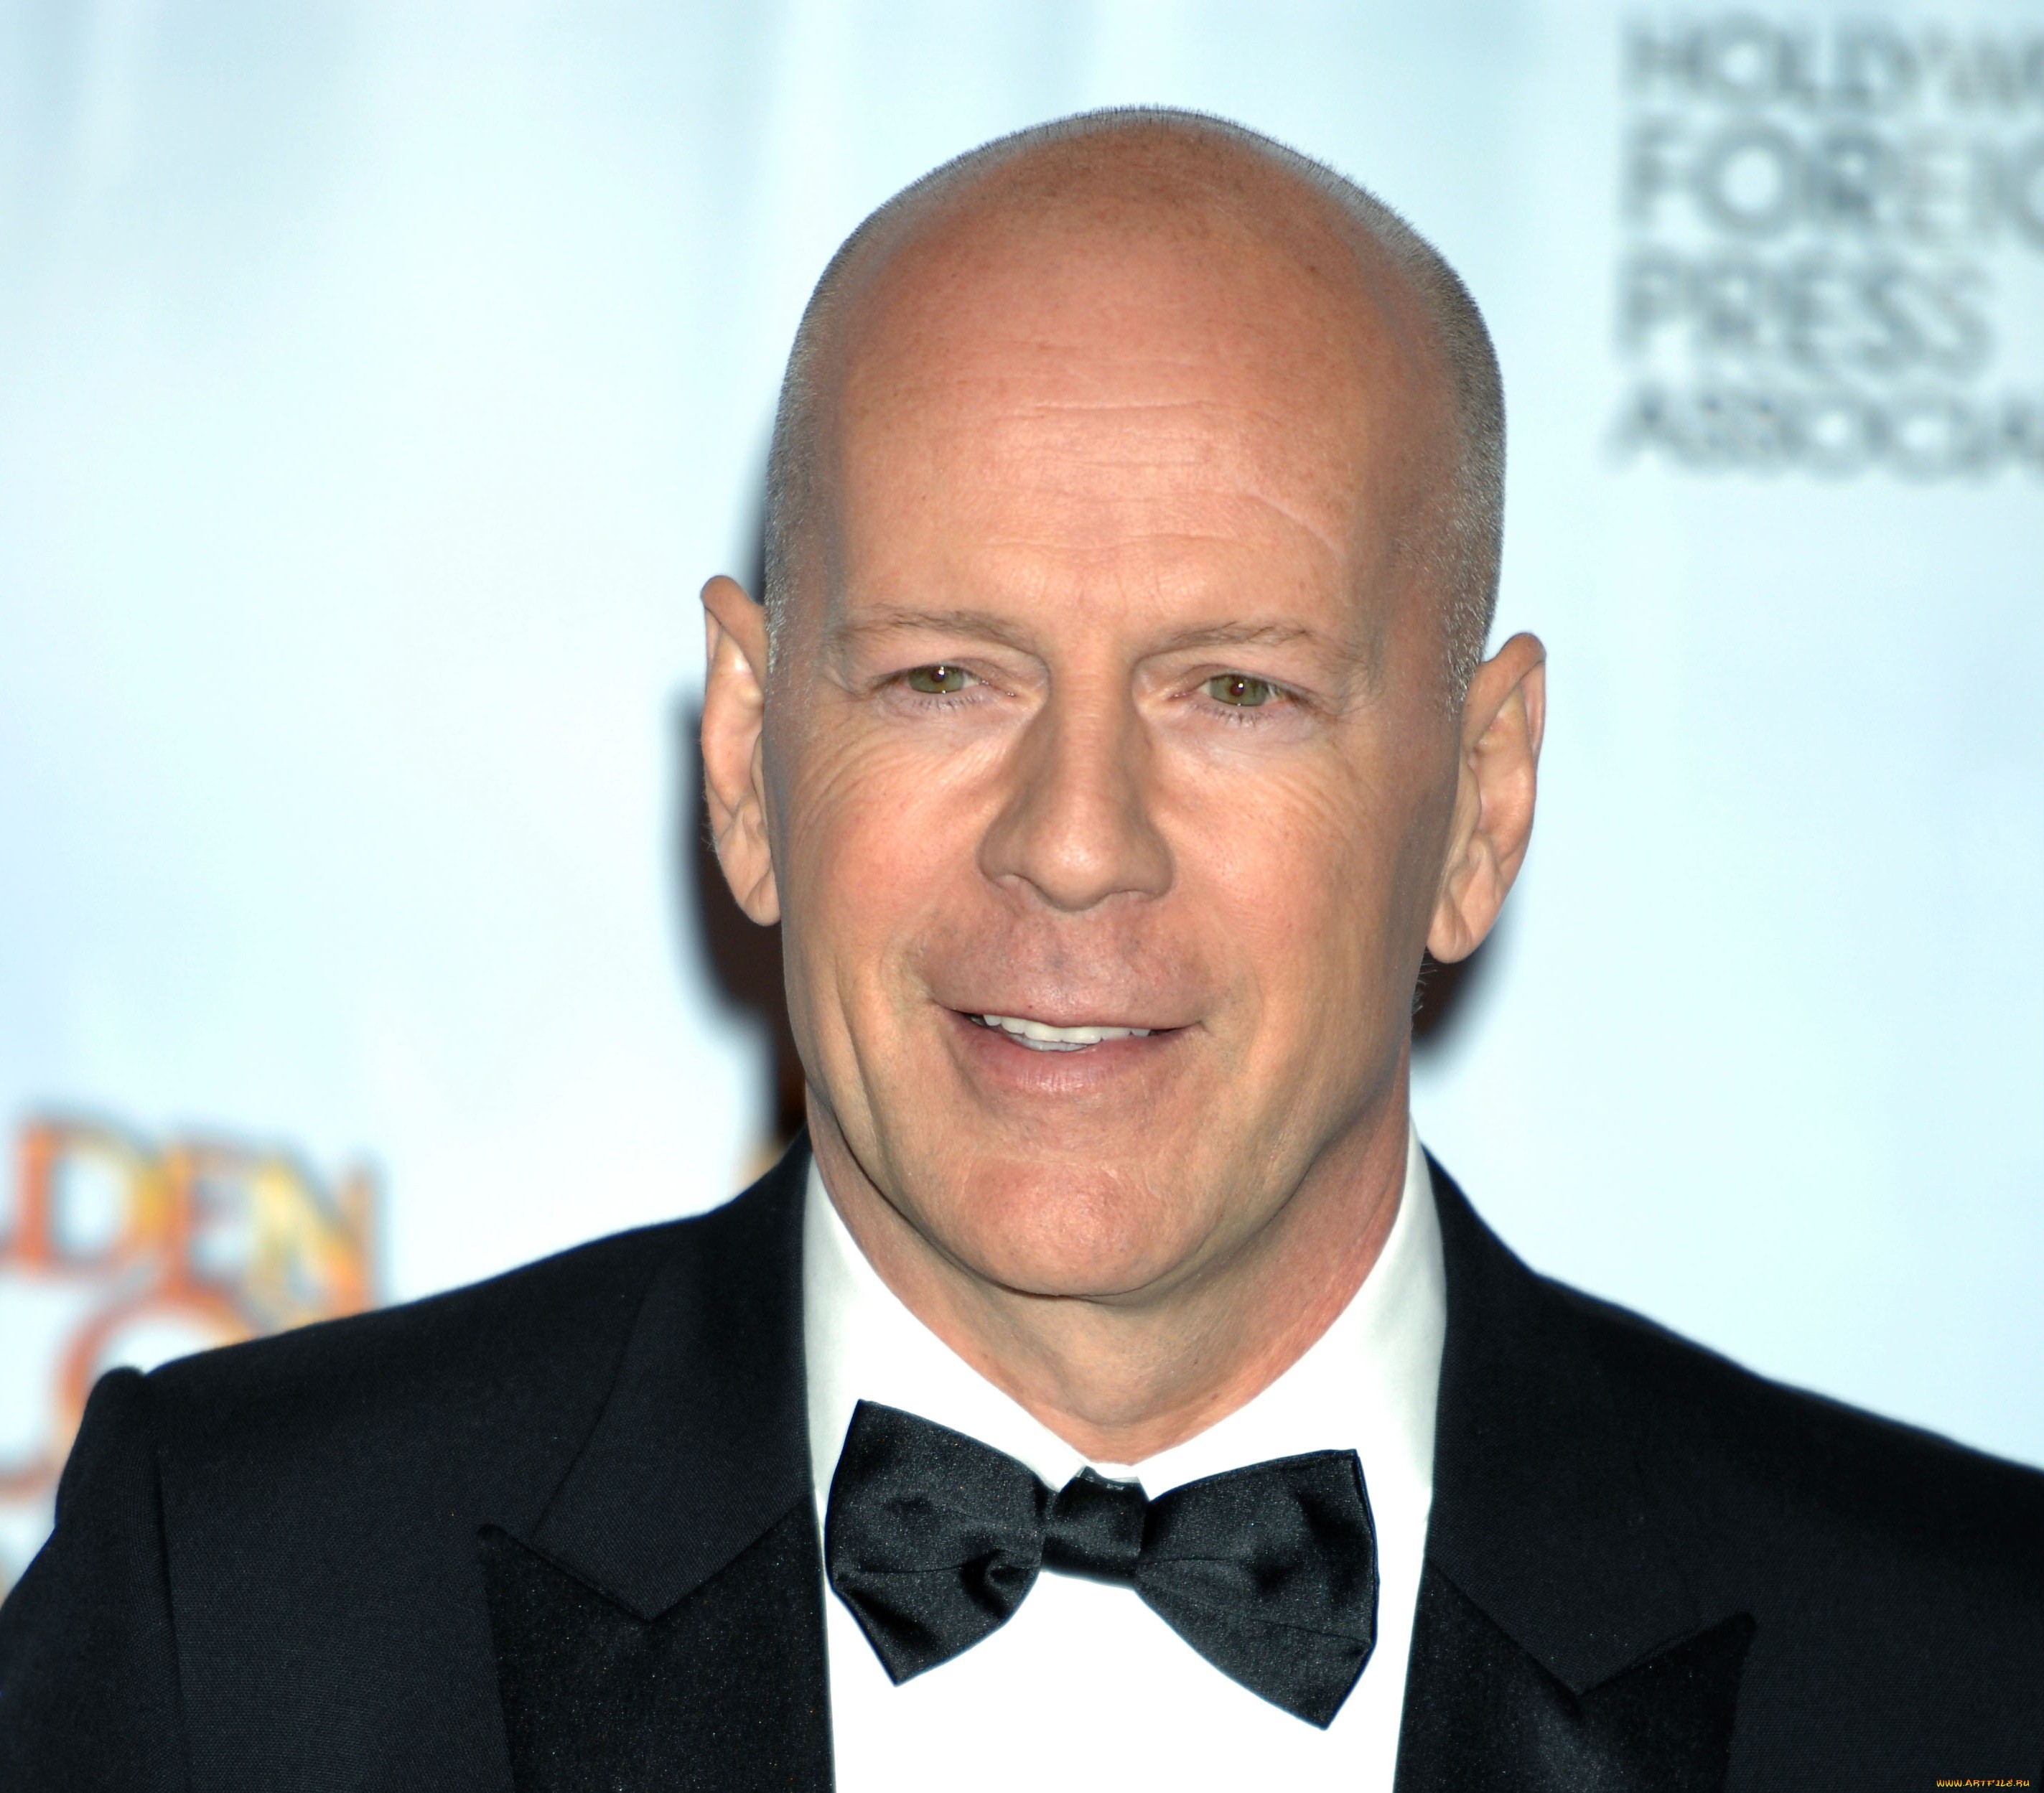 Bruce Willis Picture